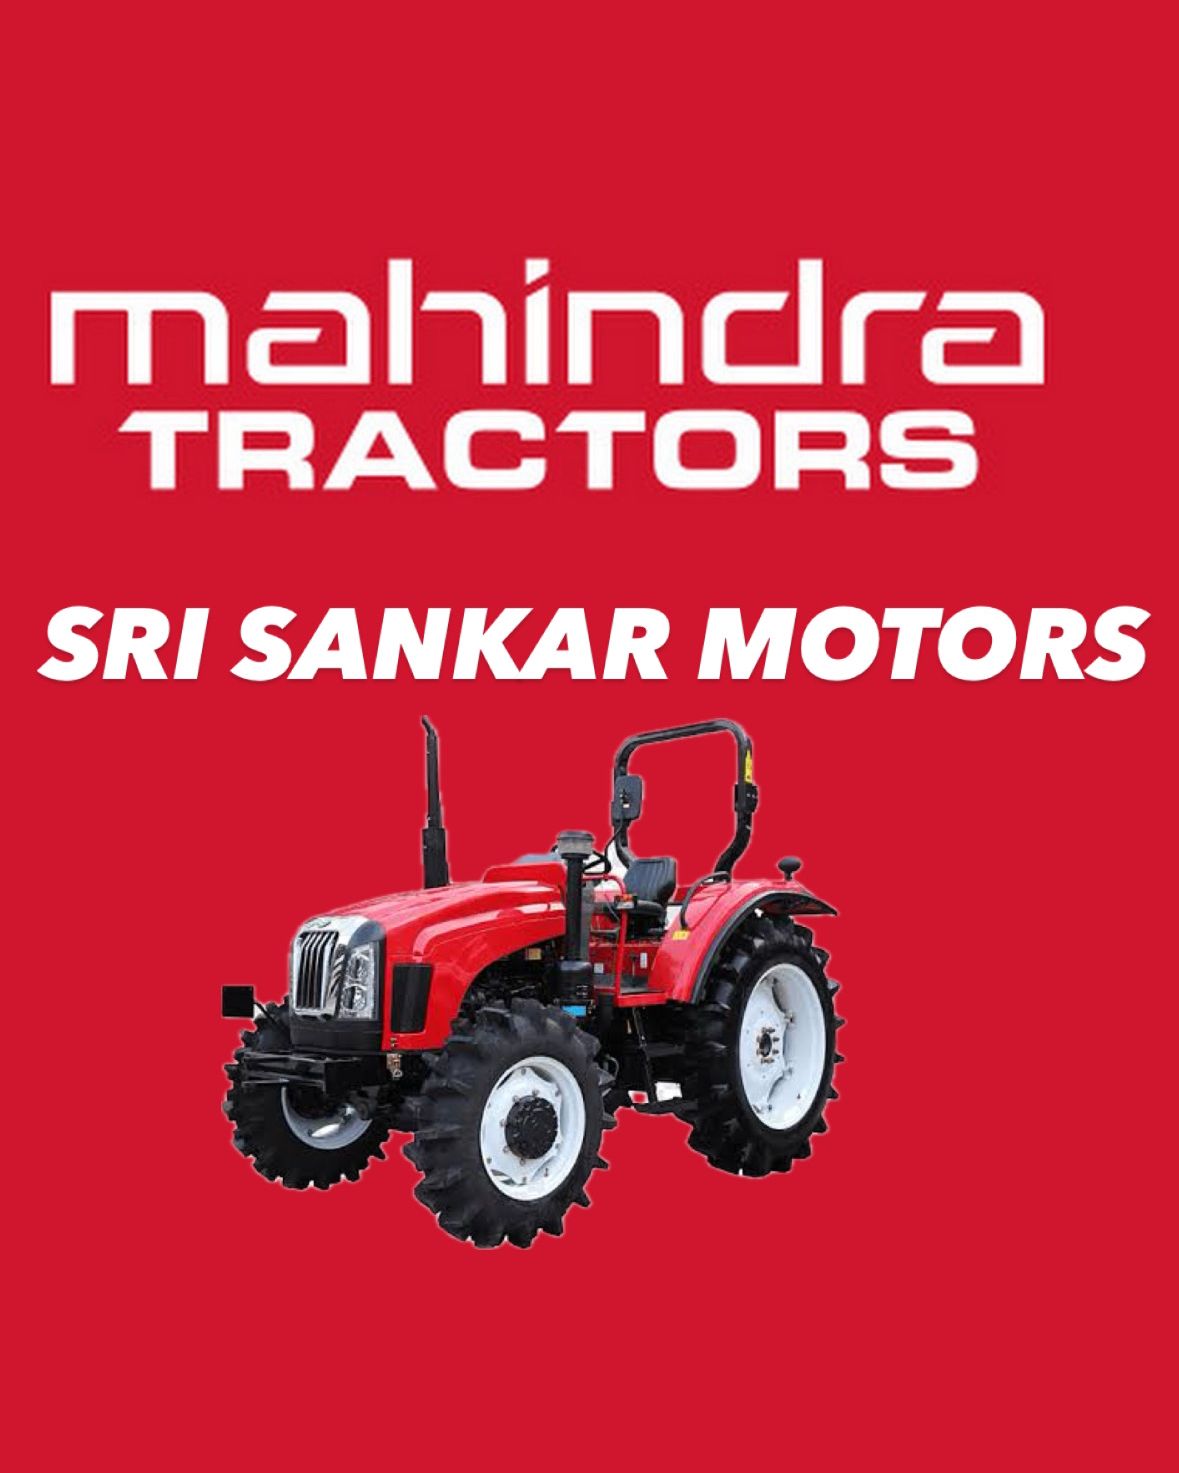 Sri Sankar Motors